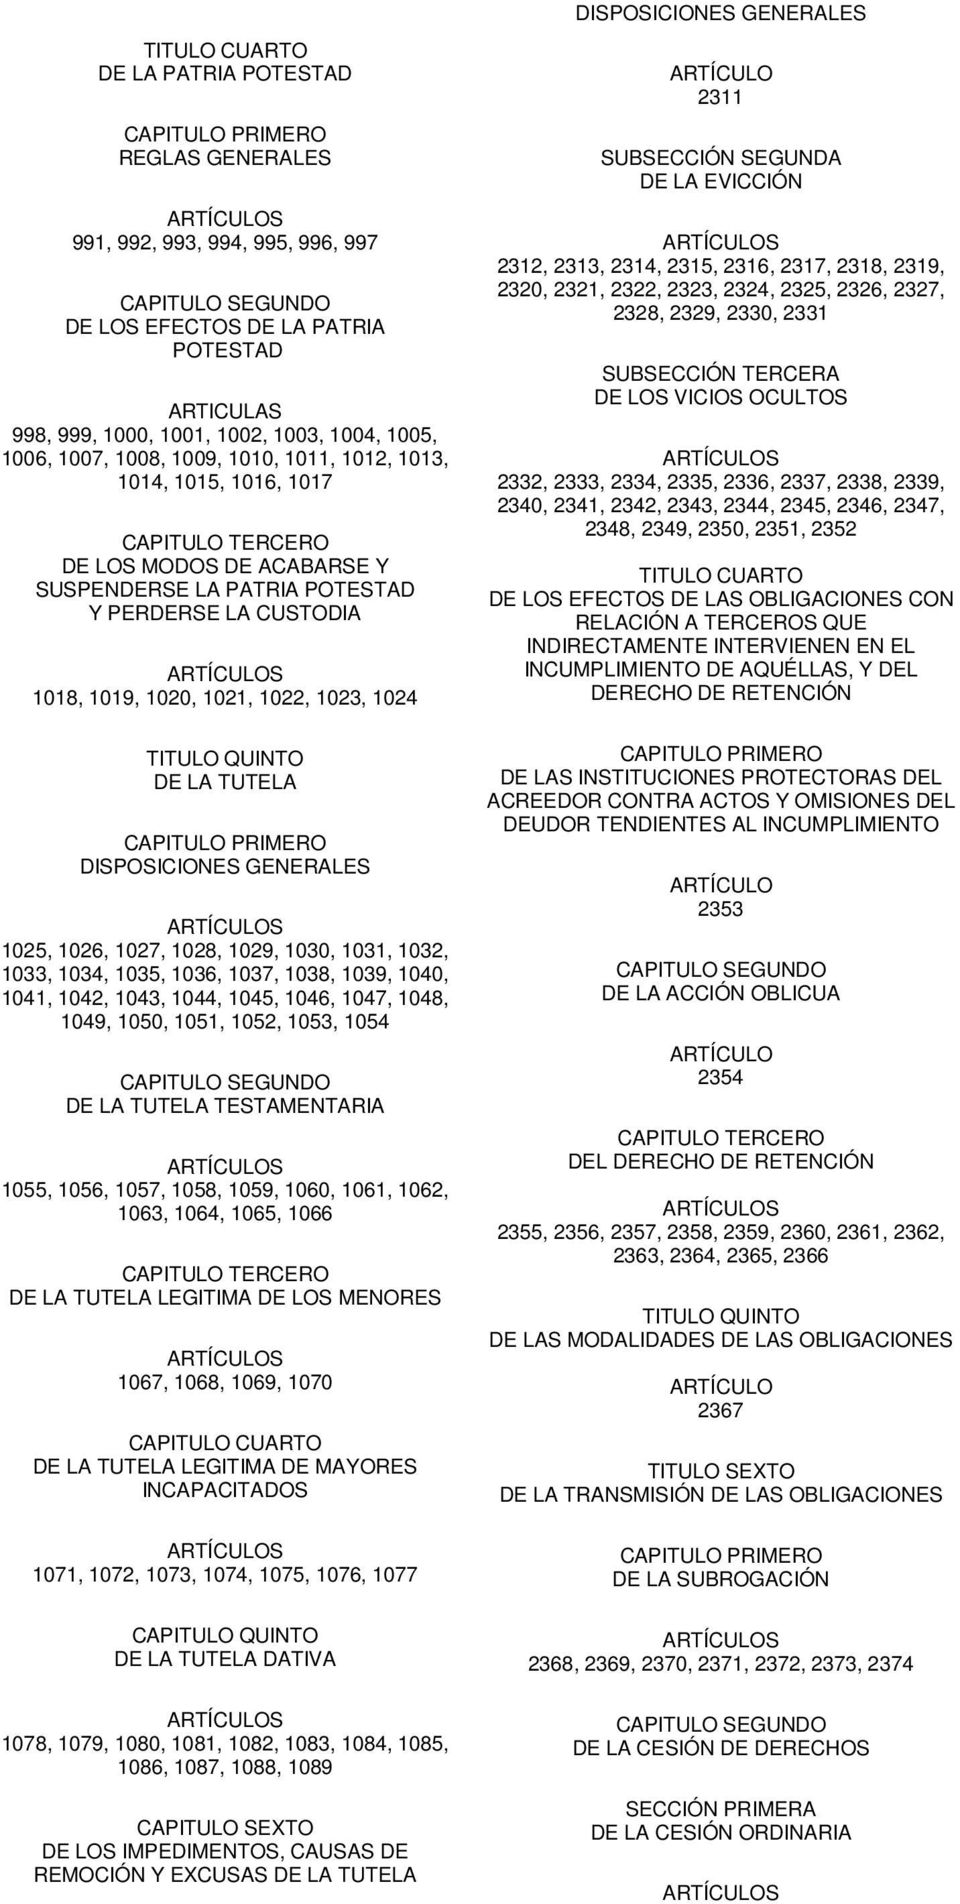 1020, 1021, 1022, 1023, 1024 TITULO QUINTO DE LA TUTELA CAPITULO PRIMERO DISPOSICIONES GENERALES 1025, 1026, 1027, 1028, 1029, 1030, 1031, 1032, 1033, 1034, 1035, 1036, 1037, 1038, 1039, 1040, 1041,